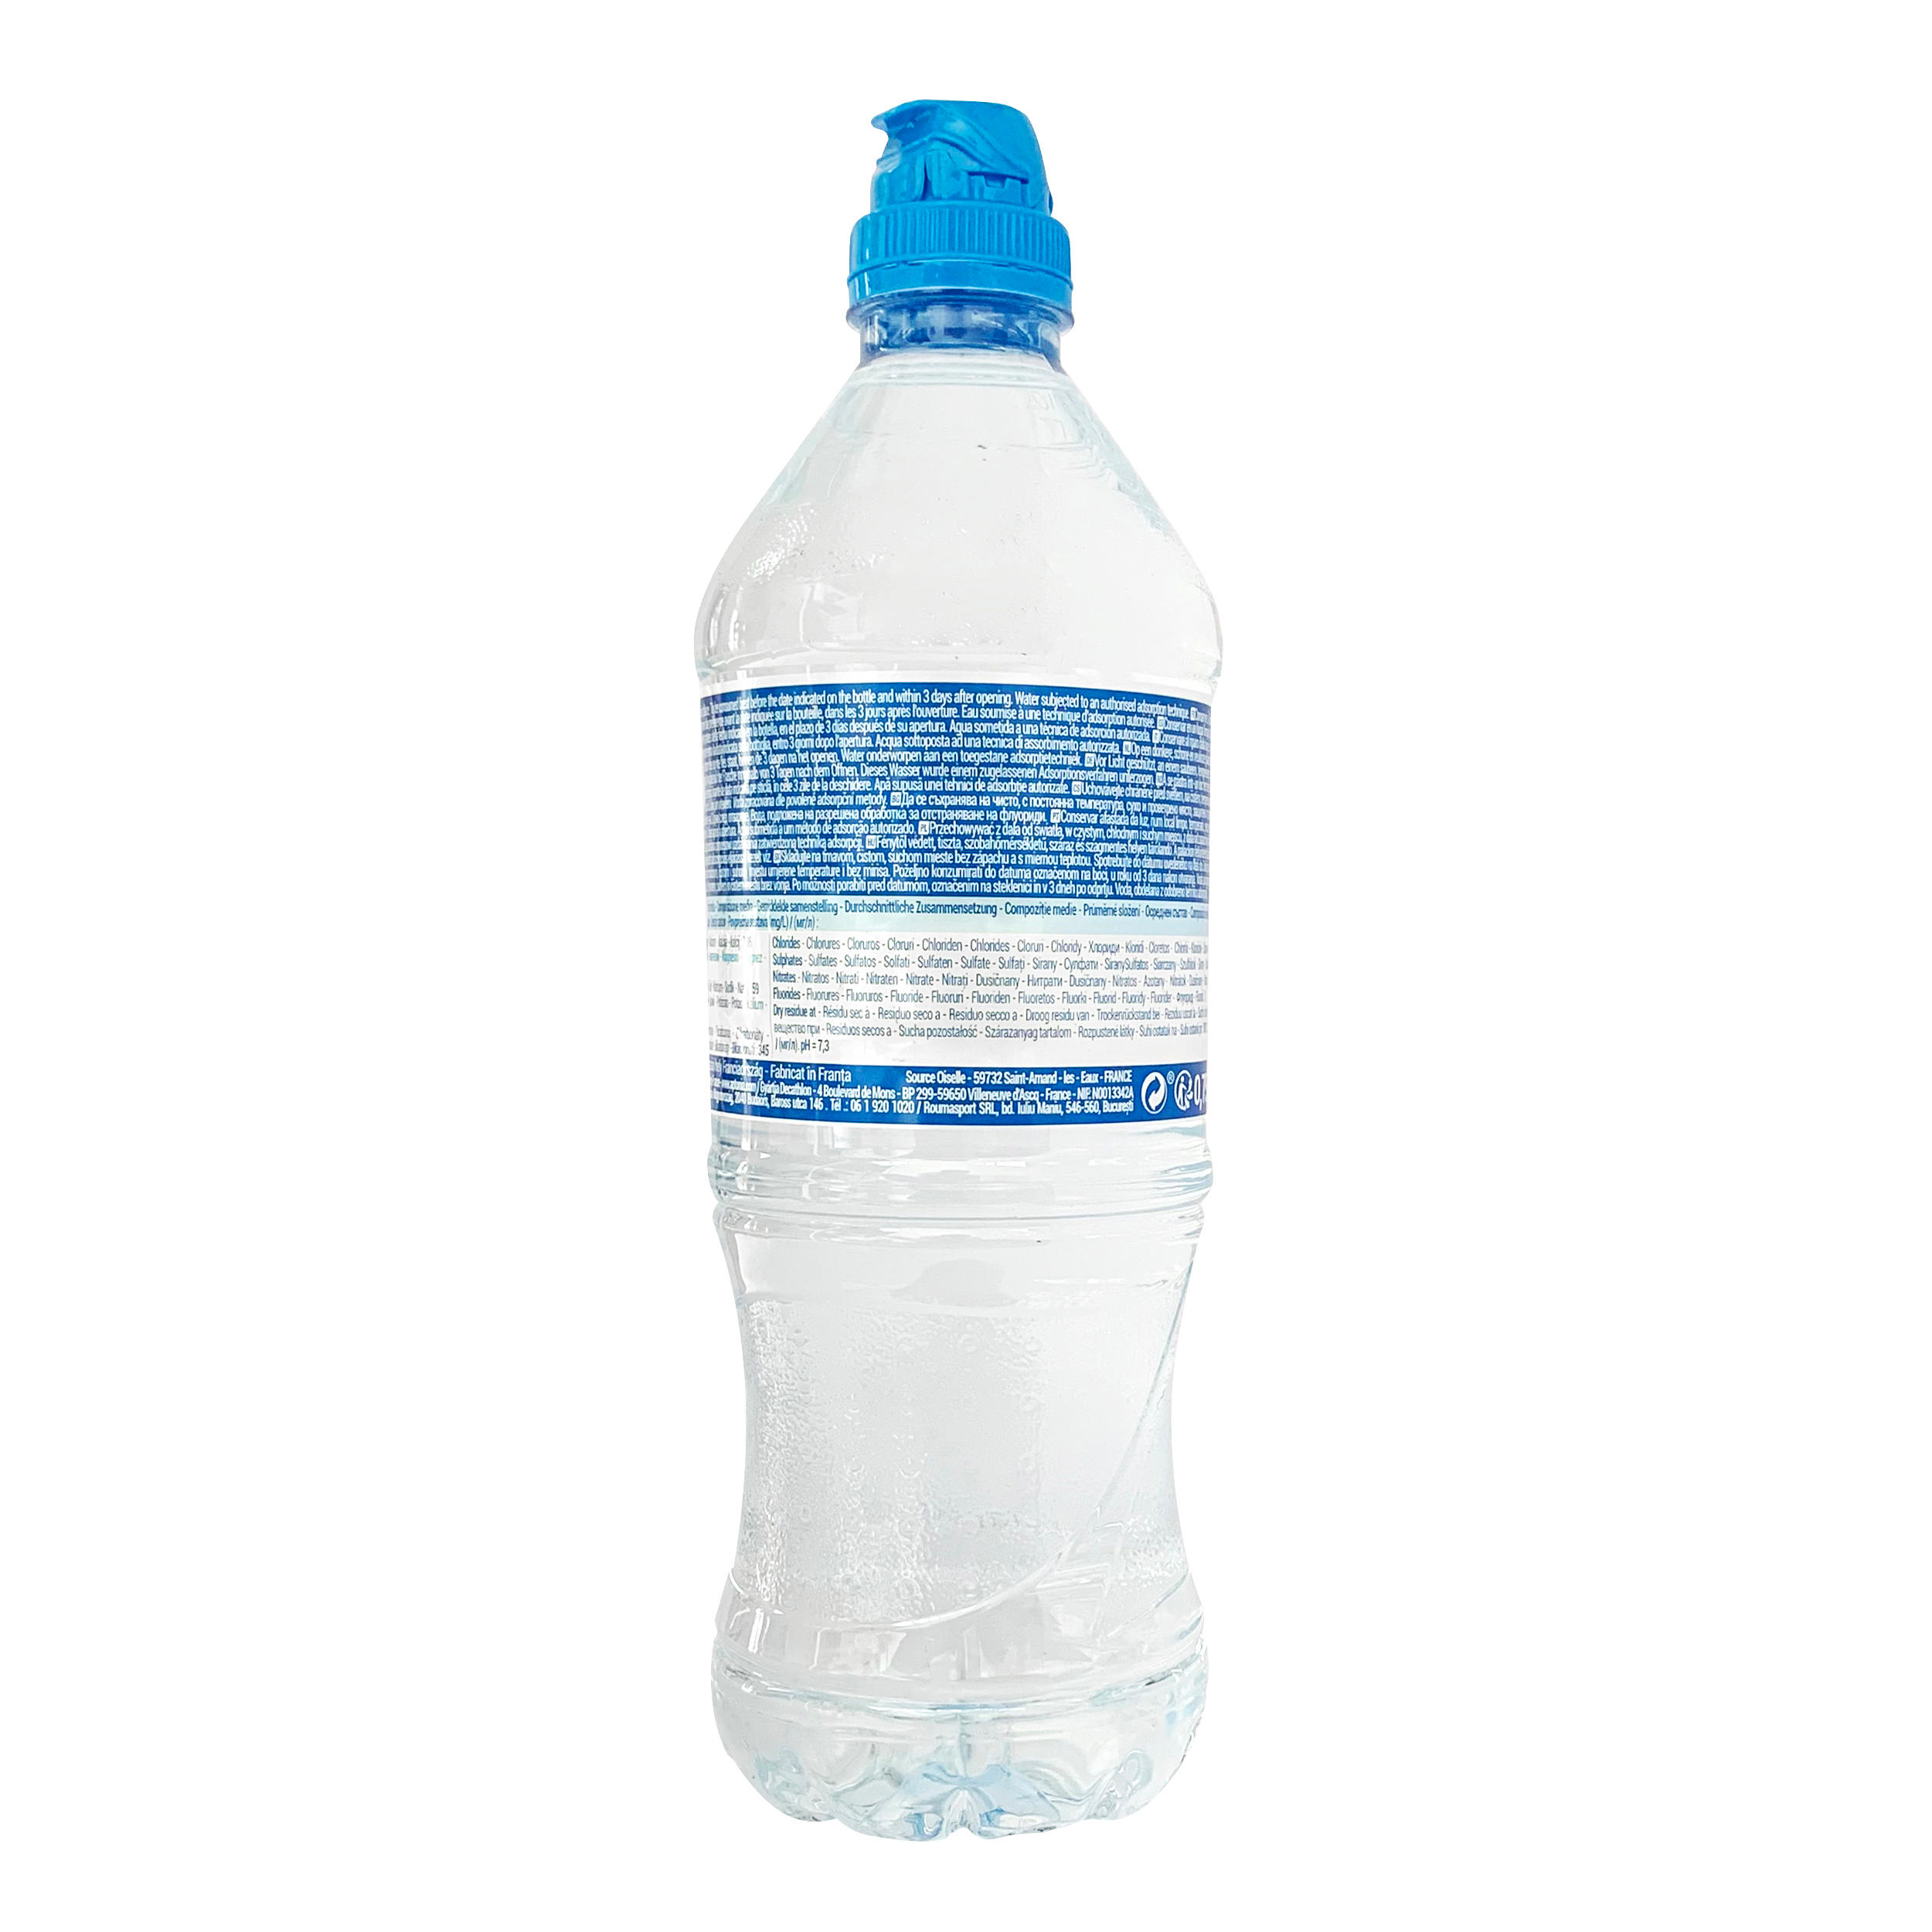 750ml OISELLE Water bottle 4/4